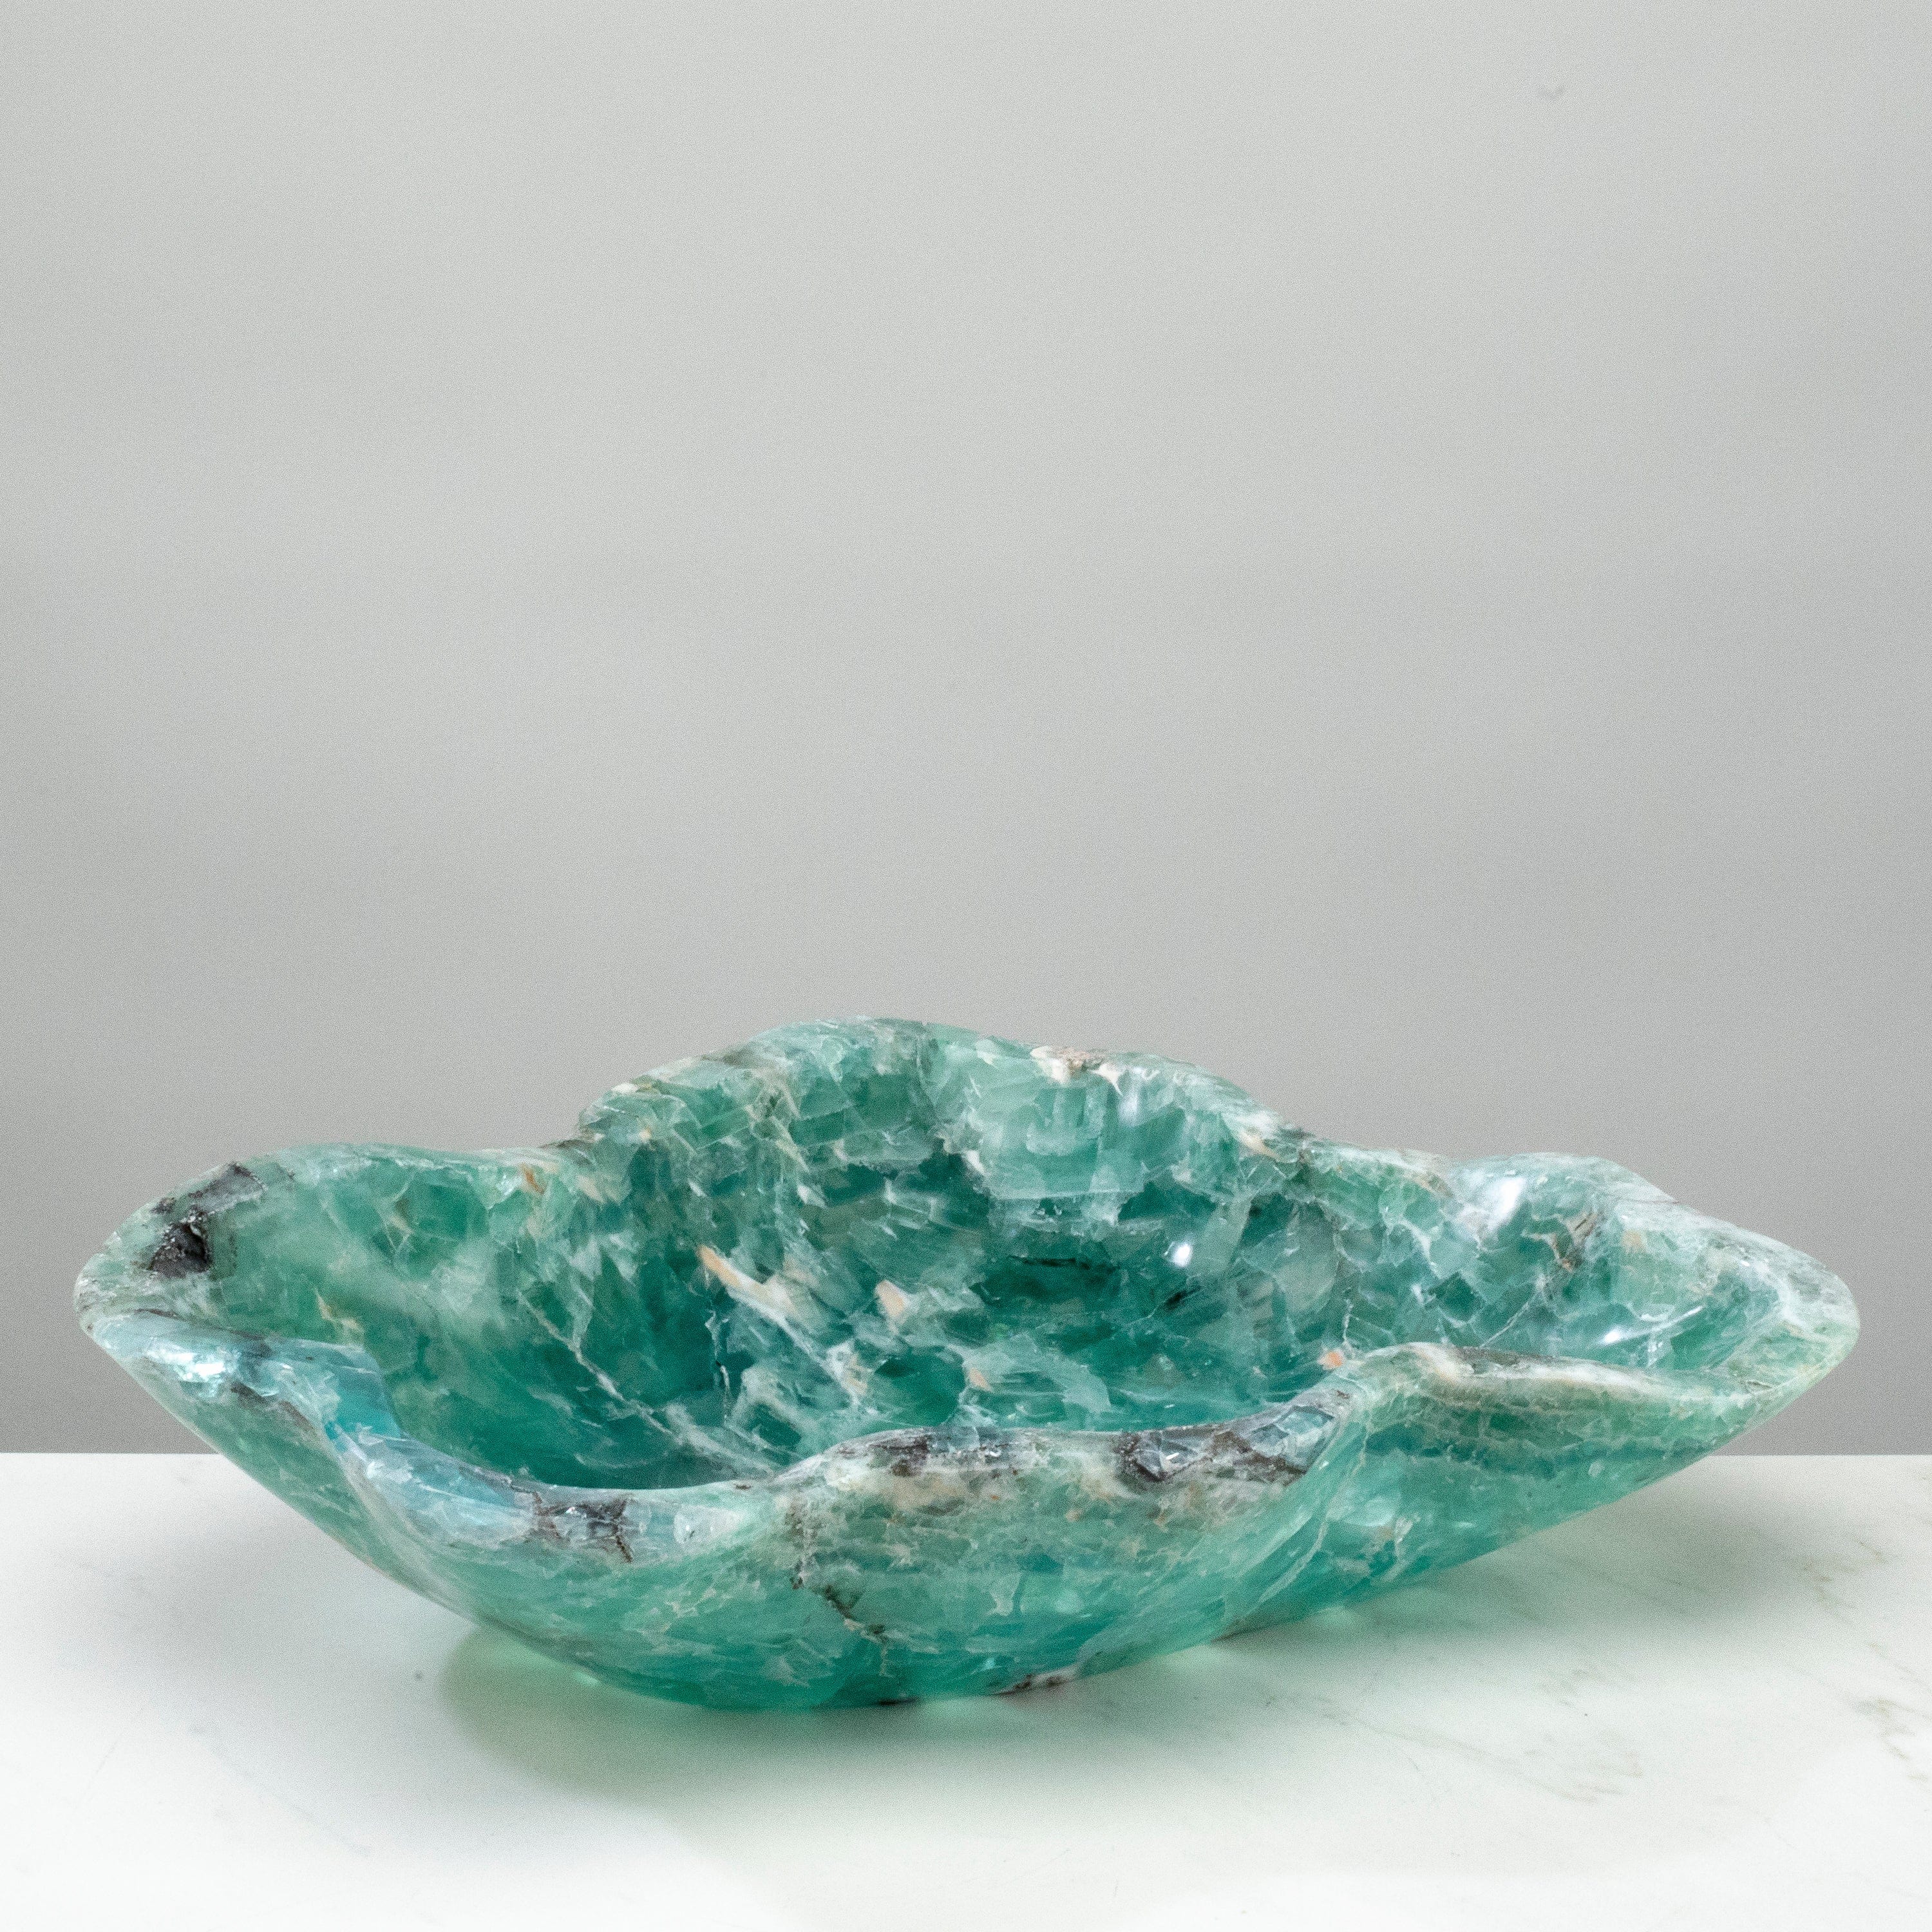 KALIFANO Gemstone Bowls Natural Blue / Green Fluorite Bowl 16.5" BFL8000.004